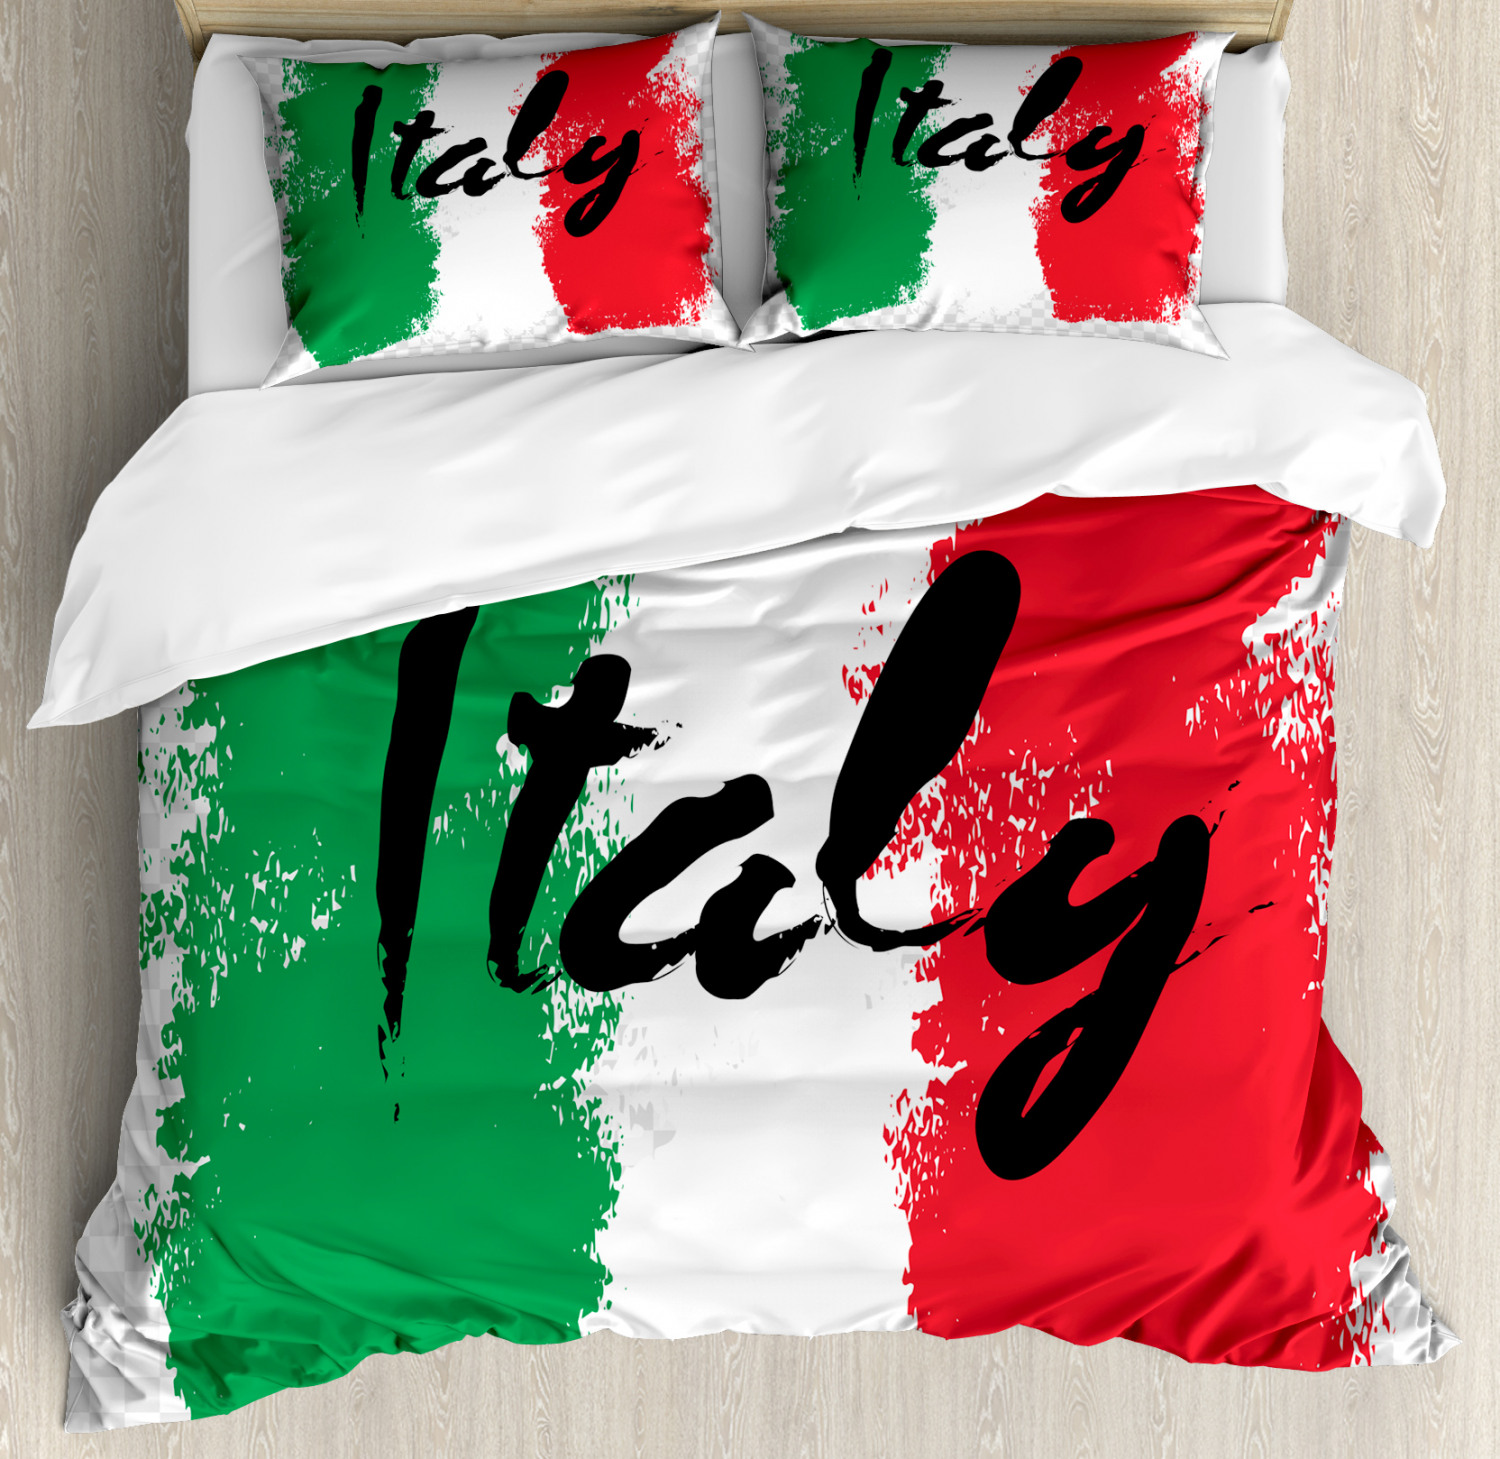 Italienische Flagge und Italien